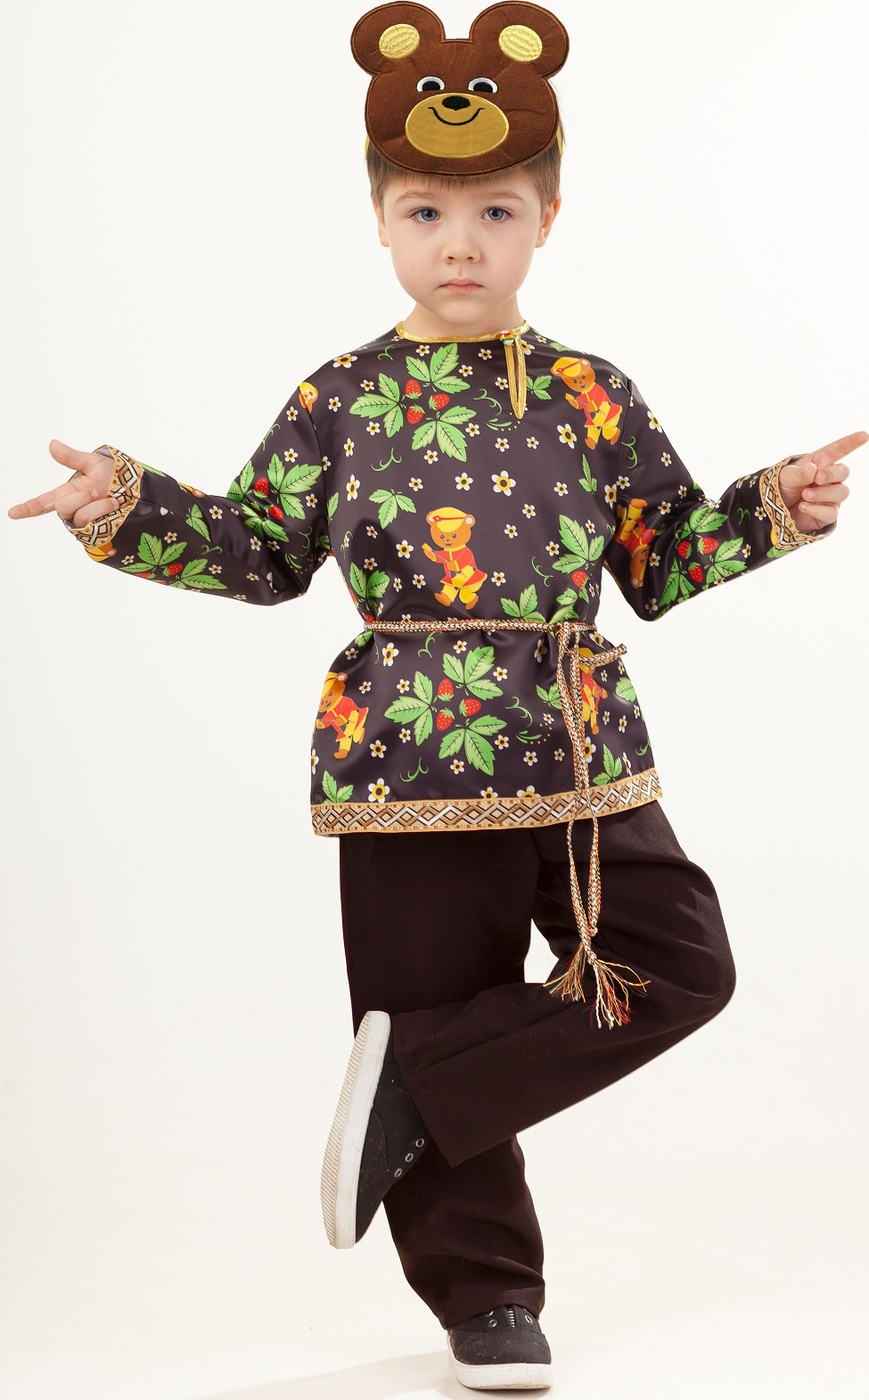 фото Карнавальный костюм Мишка Топтыжка рубашка, брюки, маска, пояс размер 104-52 Пуговка